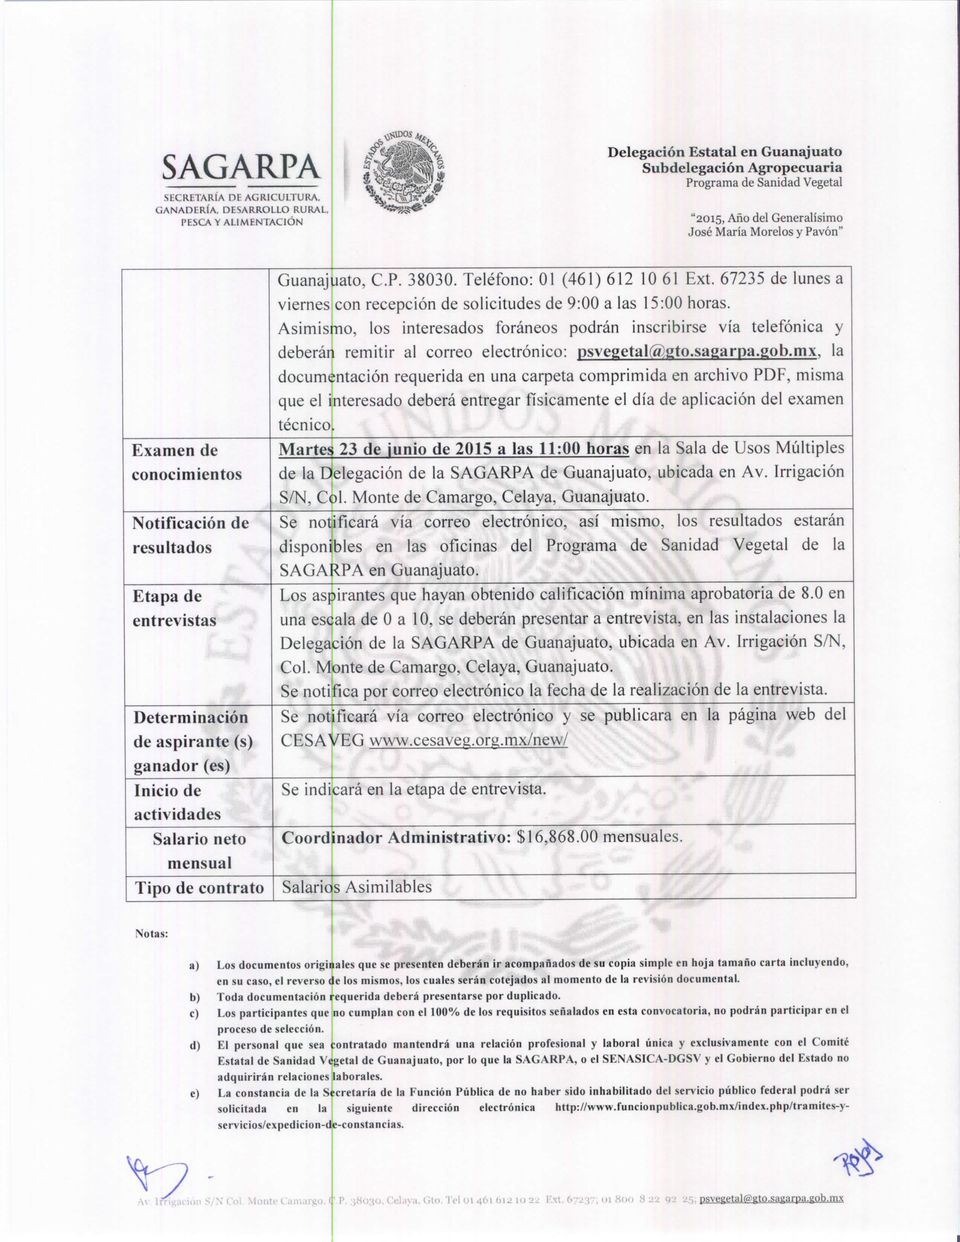 contrato Guanajuato, C.P. 38030. Teléfono: 01 (461) 612 10 61 Ext. 67235 de lunes a viernes con recepción de solicitudes de 9:00 a las 15:00 horas.